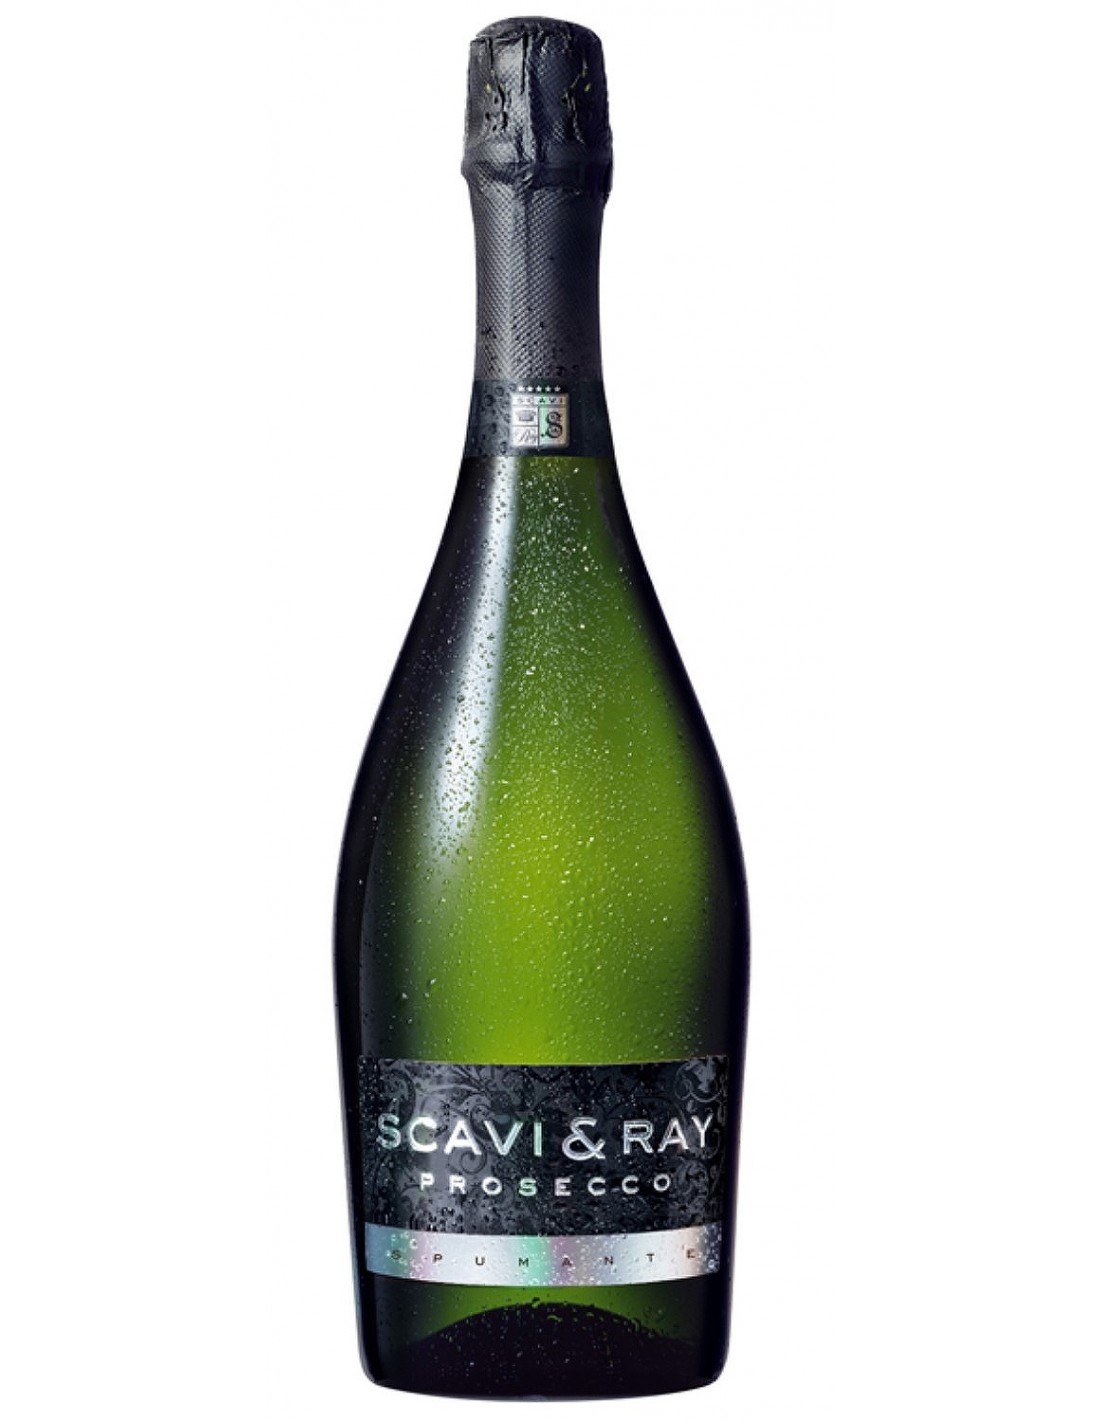 Vin Scavi & Ray Prosecco Extra Dry, 0.75L, 11% alc., Italia alcooldiscount.ro